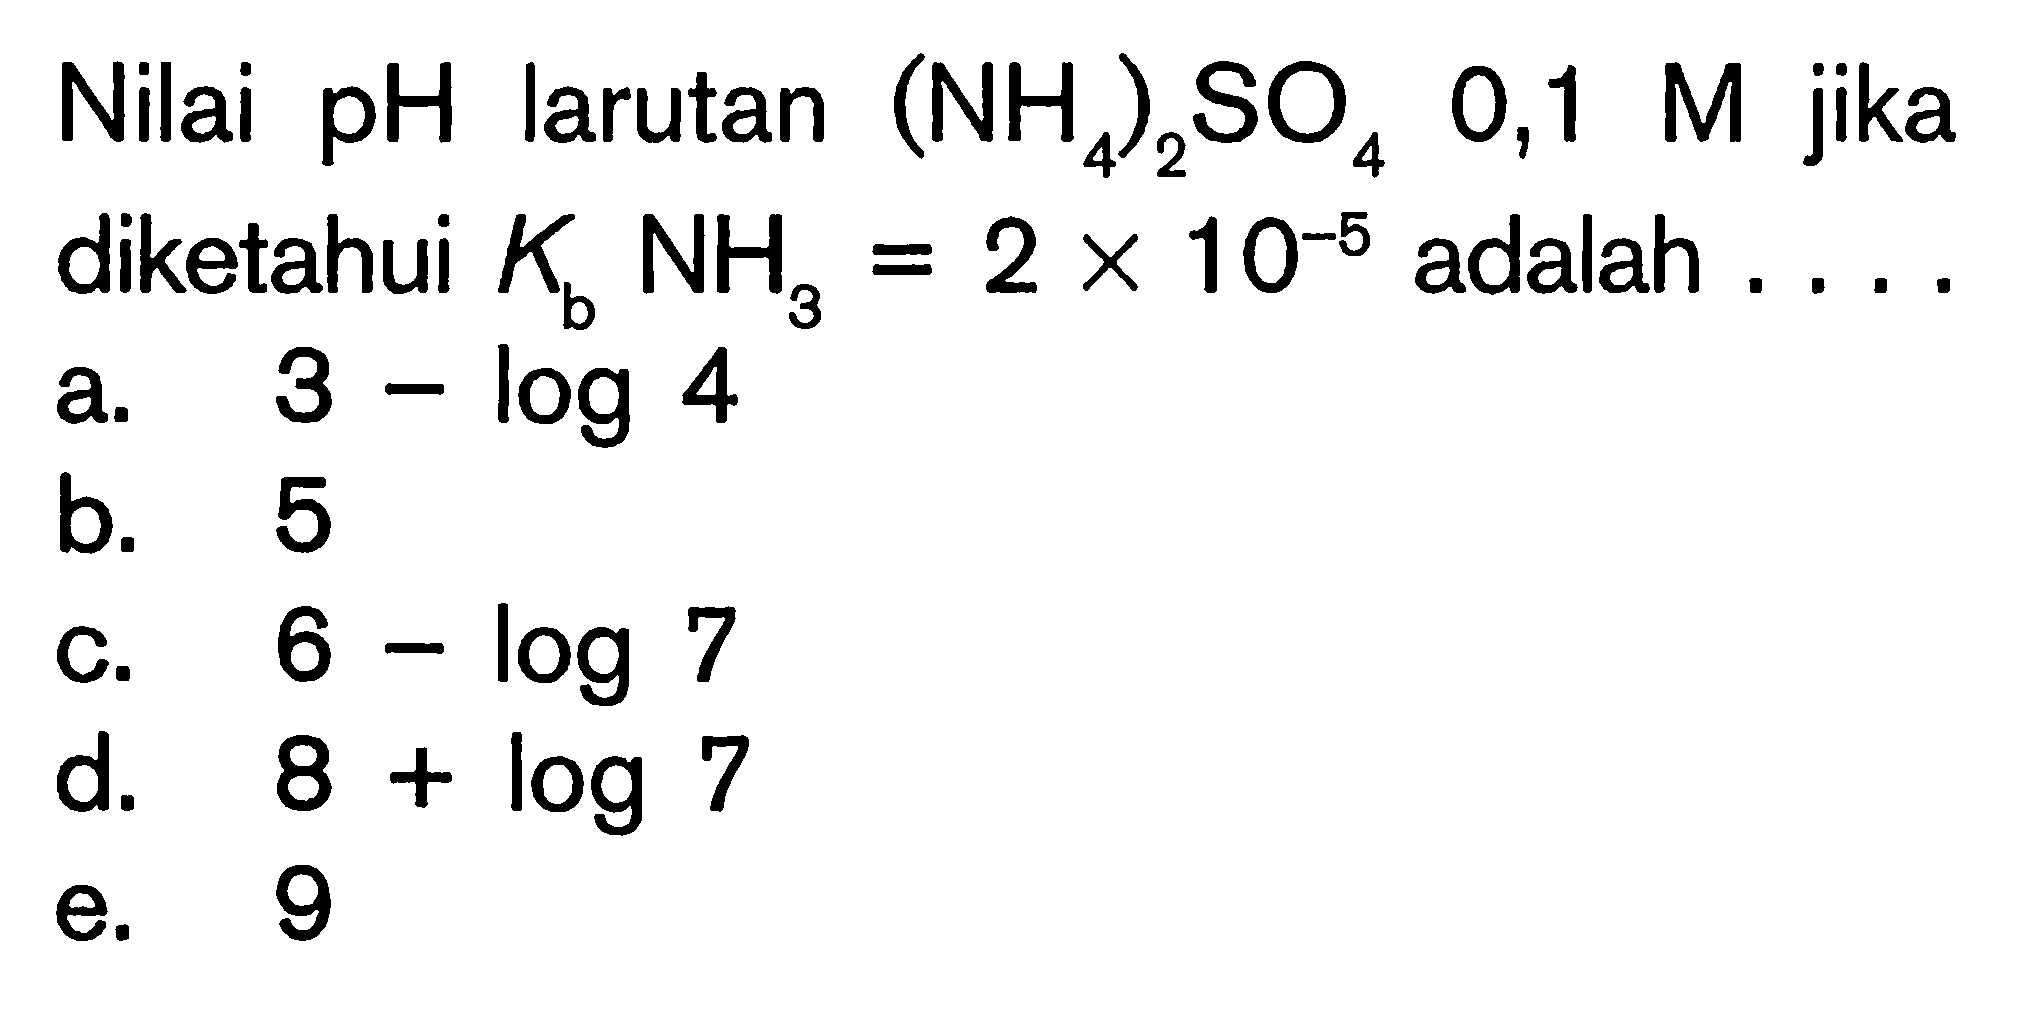 Nilai pH larutan  ((NH4)2)SO4 0,1 M  jika diketahui  KbNH3=2 x 10^(-5)  adalah  .... 